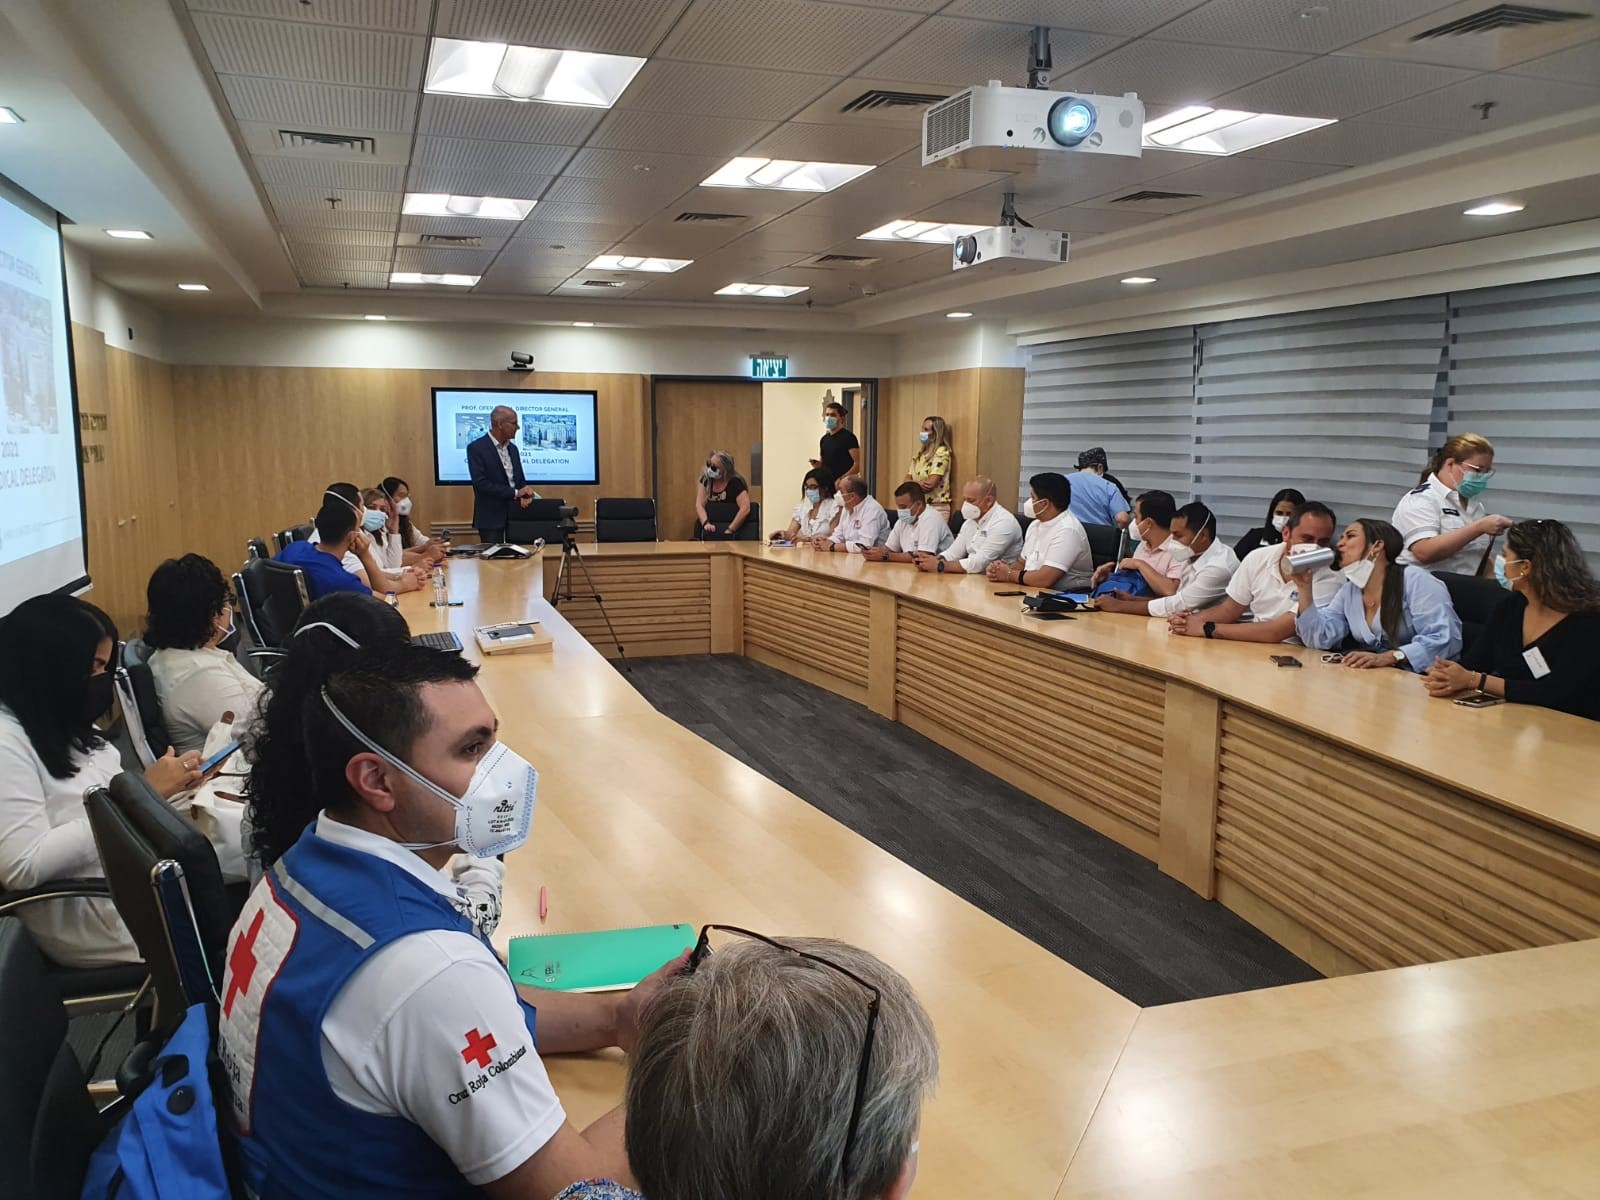 23 profesionales, líderes y administradores del sector salud de Colombia concluyen con éxito taller sobre respuesta sanitaria al COVID-19 en Israel 